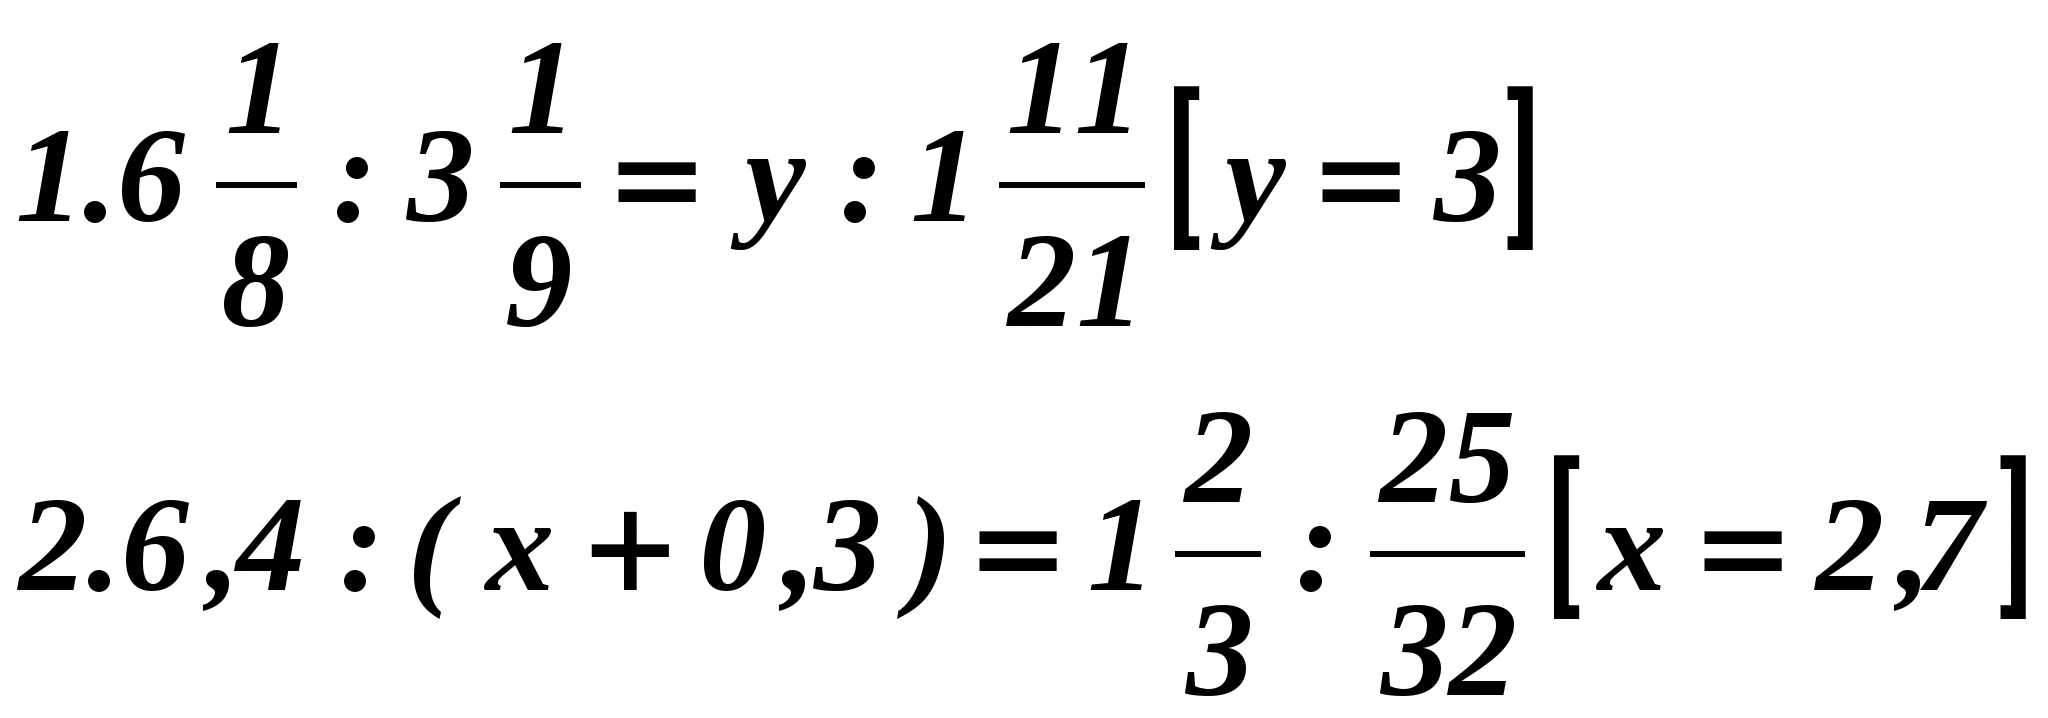 Урок по математике Пропорции. Решение задач на пропорции(6 класс)